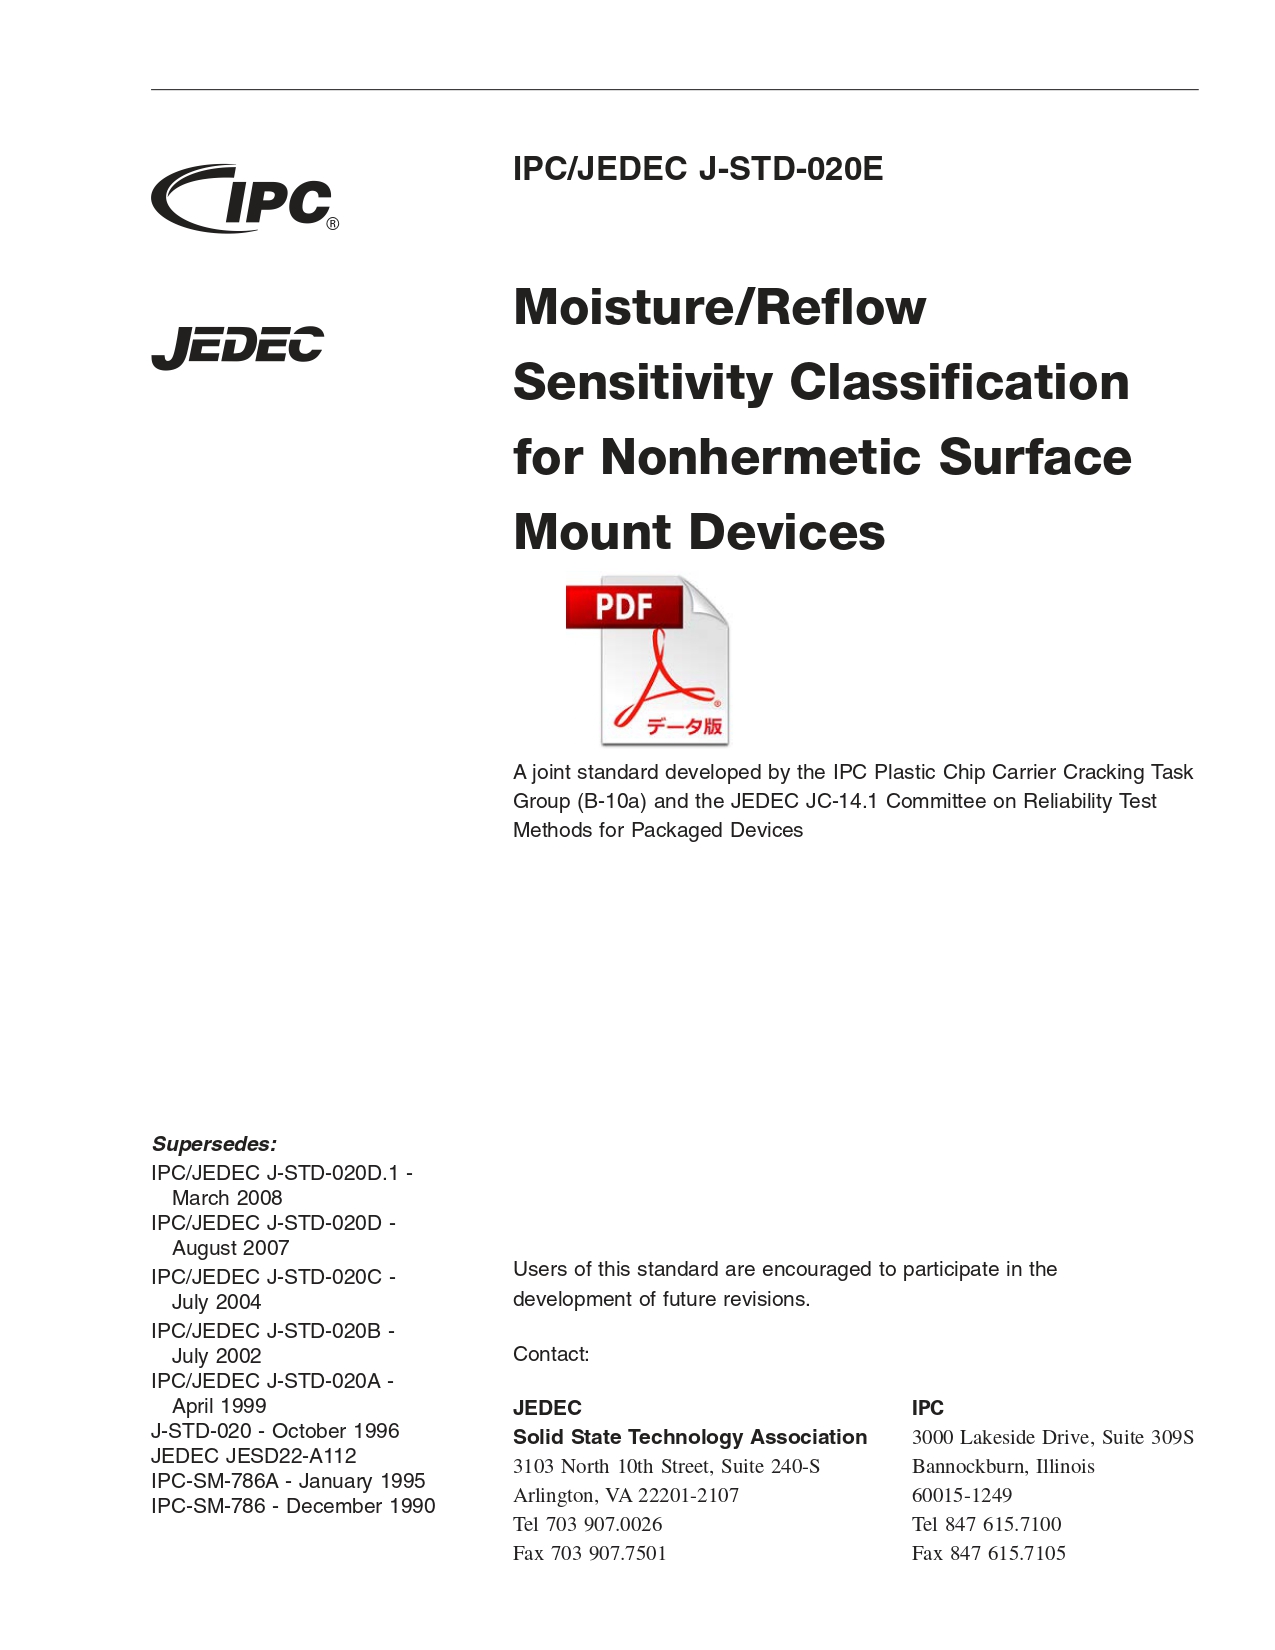 ［英語版］IPC/JEDEC J-STD-020E: Moisture/Reflow Sensitivity Classification for Nonhermetic Surface Mount Devices